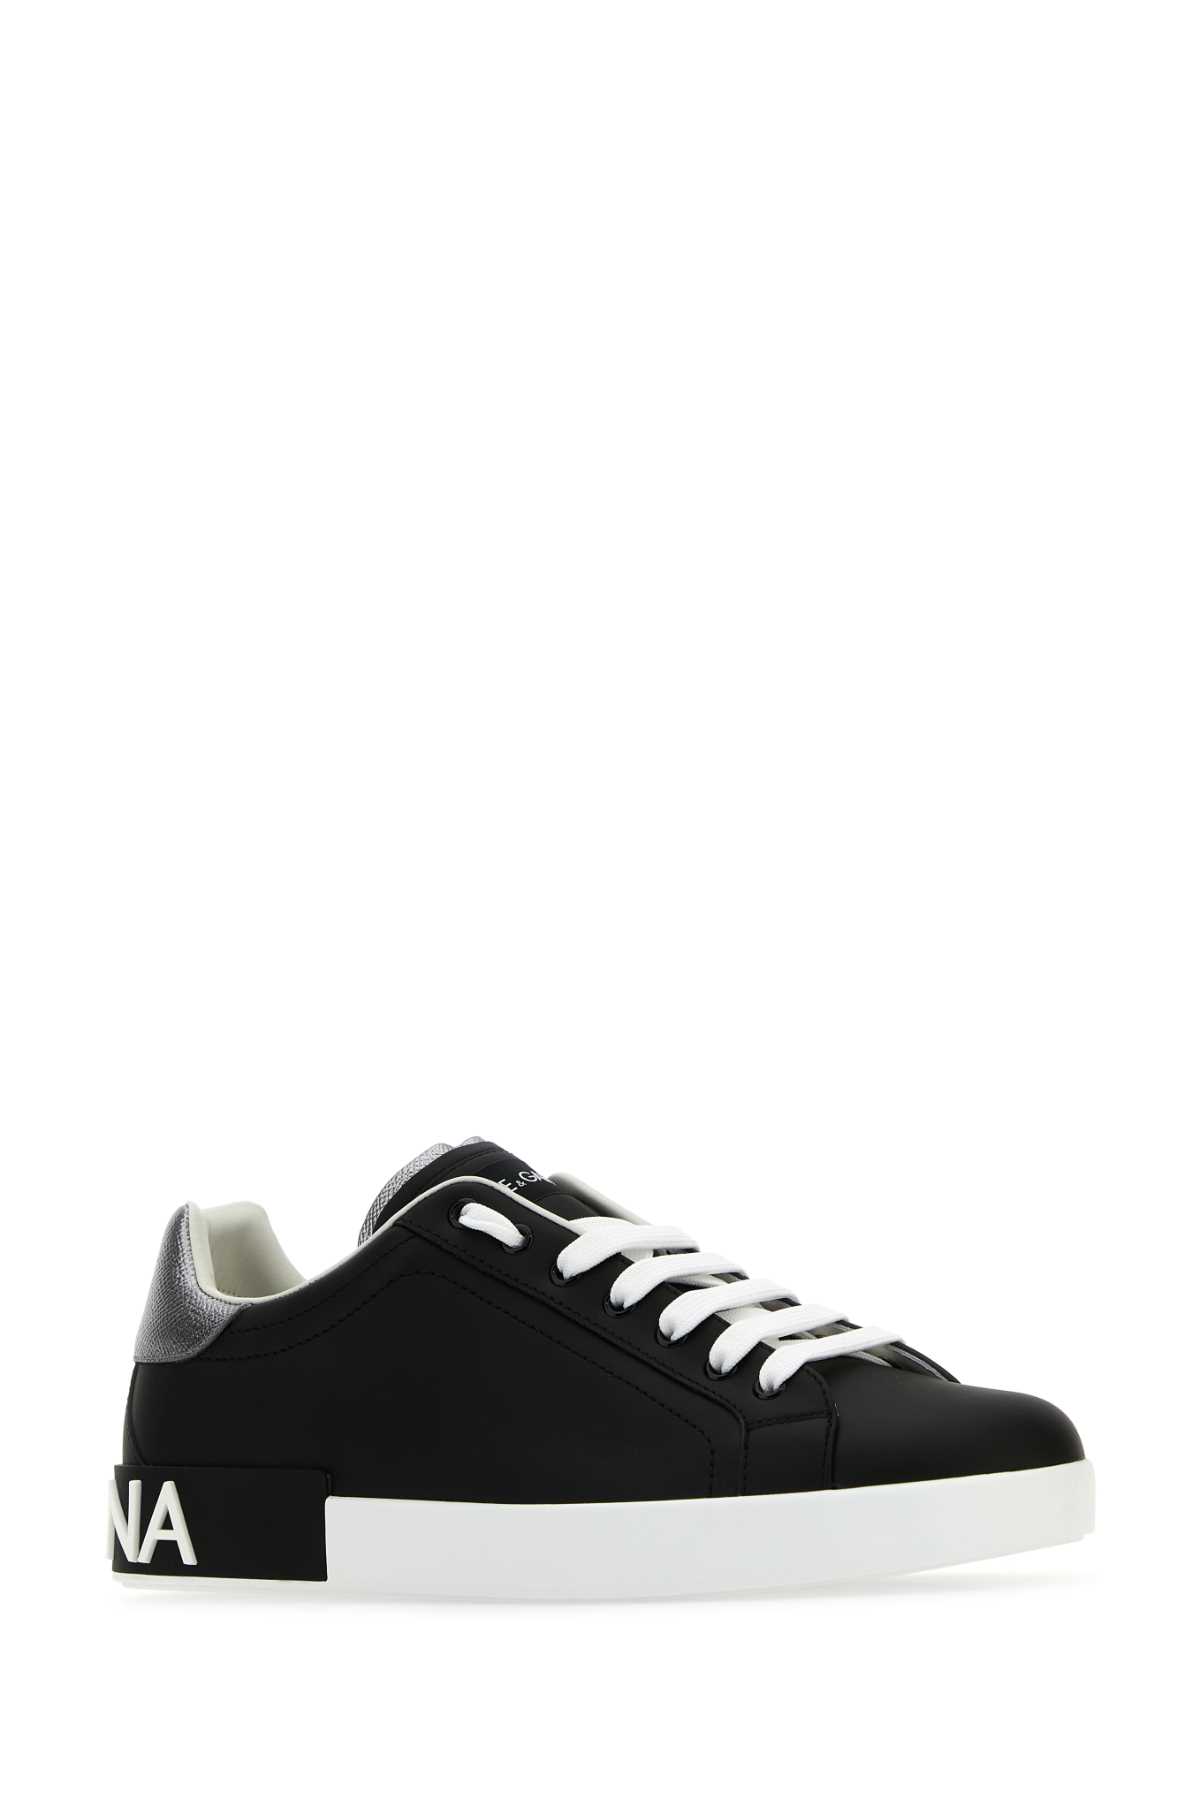 Shop Dolce & Gabbana Black Nappa Leather Portofino Sneakers In Neroargento